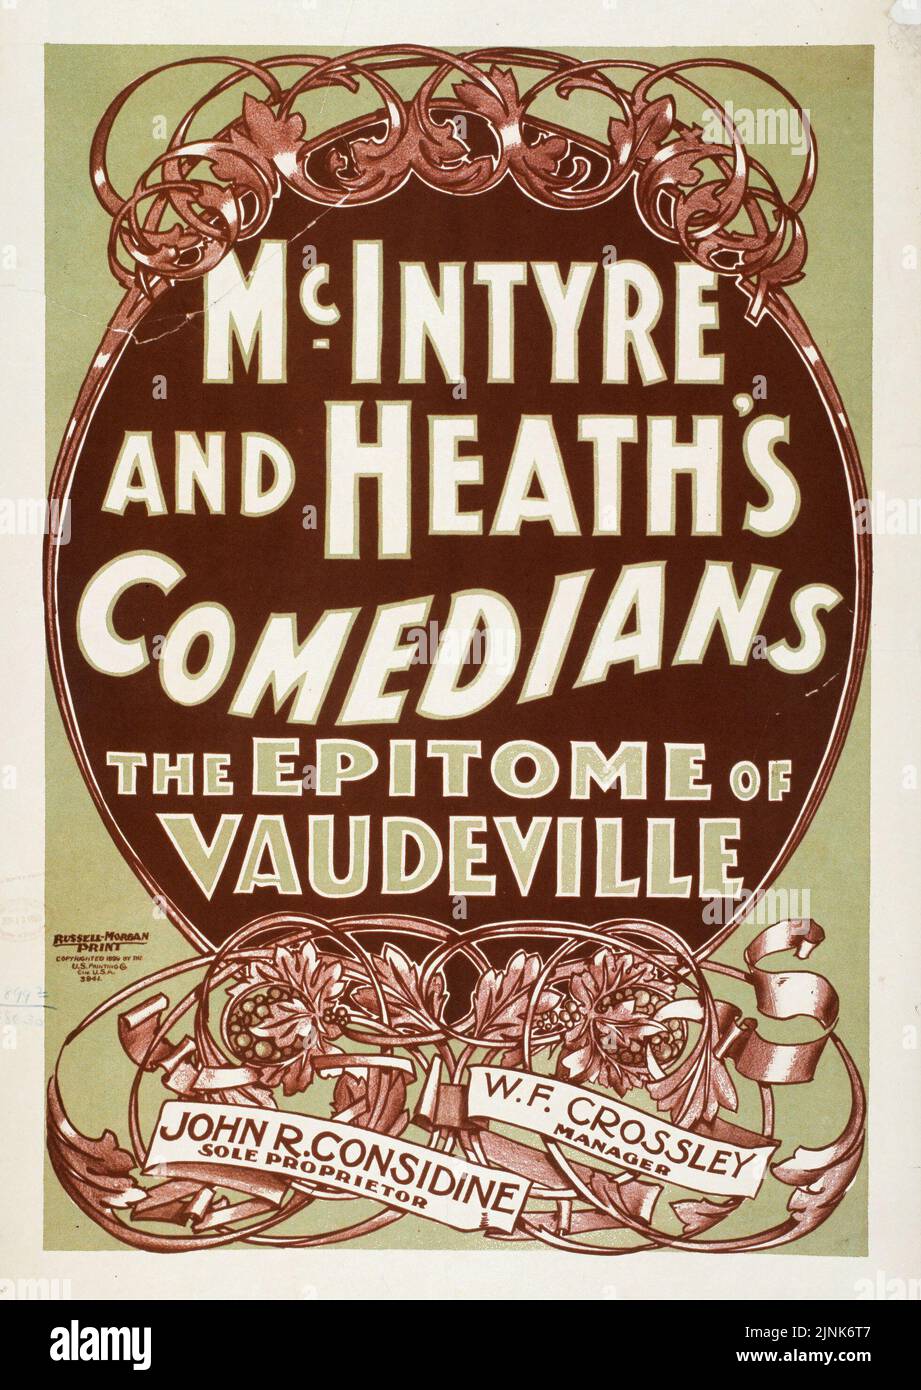 James McIntyre und Thomas Heaths Komiker der Inbegriff von Vaudeville (1899) Alleininhaber John R. Considine, Manager W. F. Crossley. Poster von U.S. Printing Co Stockfoto